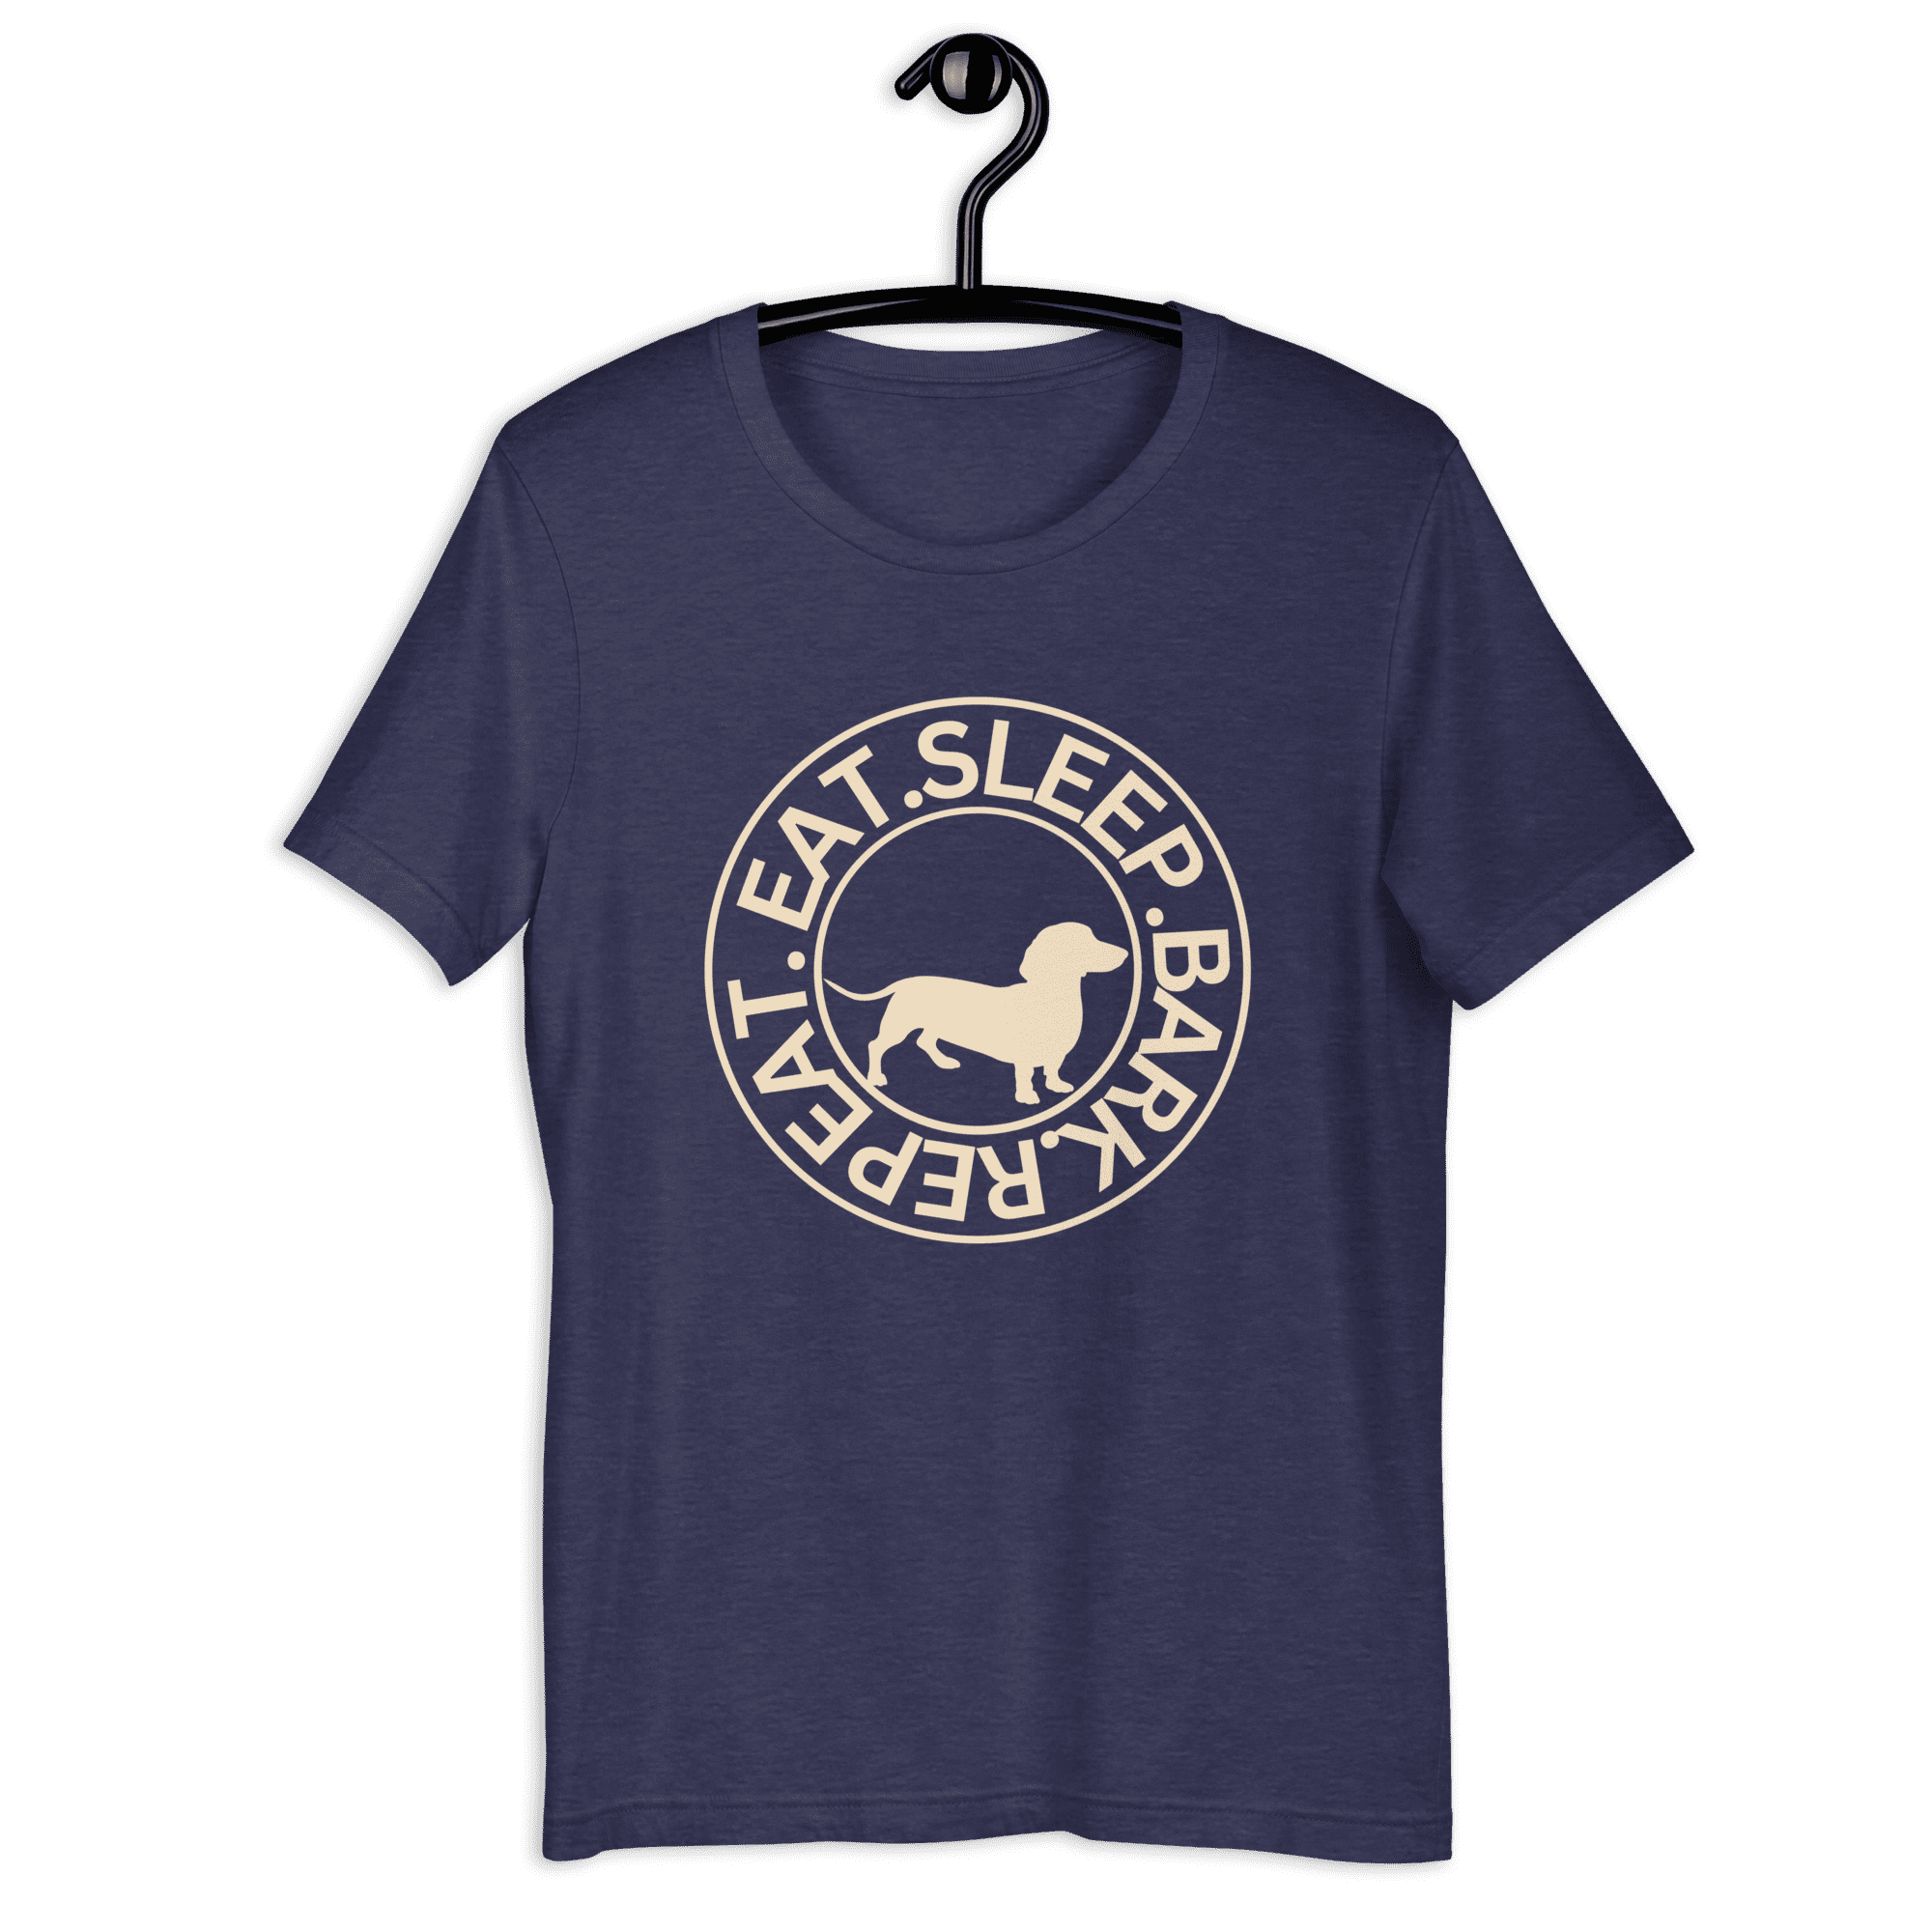 Eat Sleep Bark Repeat Transylvanian Hound (Erdélyi Kopó) Unisex T-Shirt. Blue